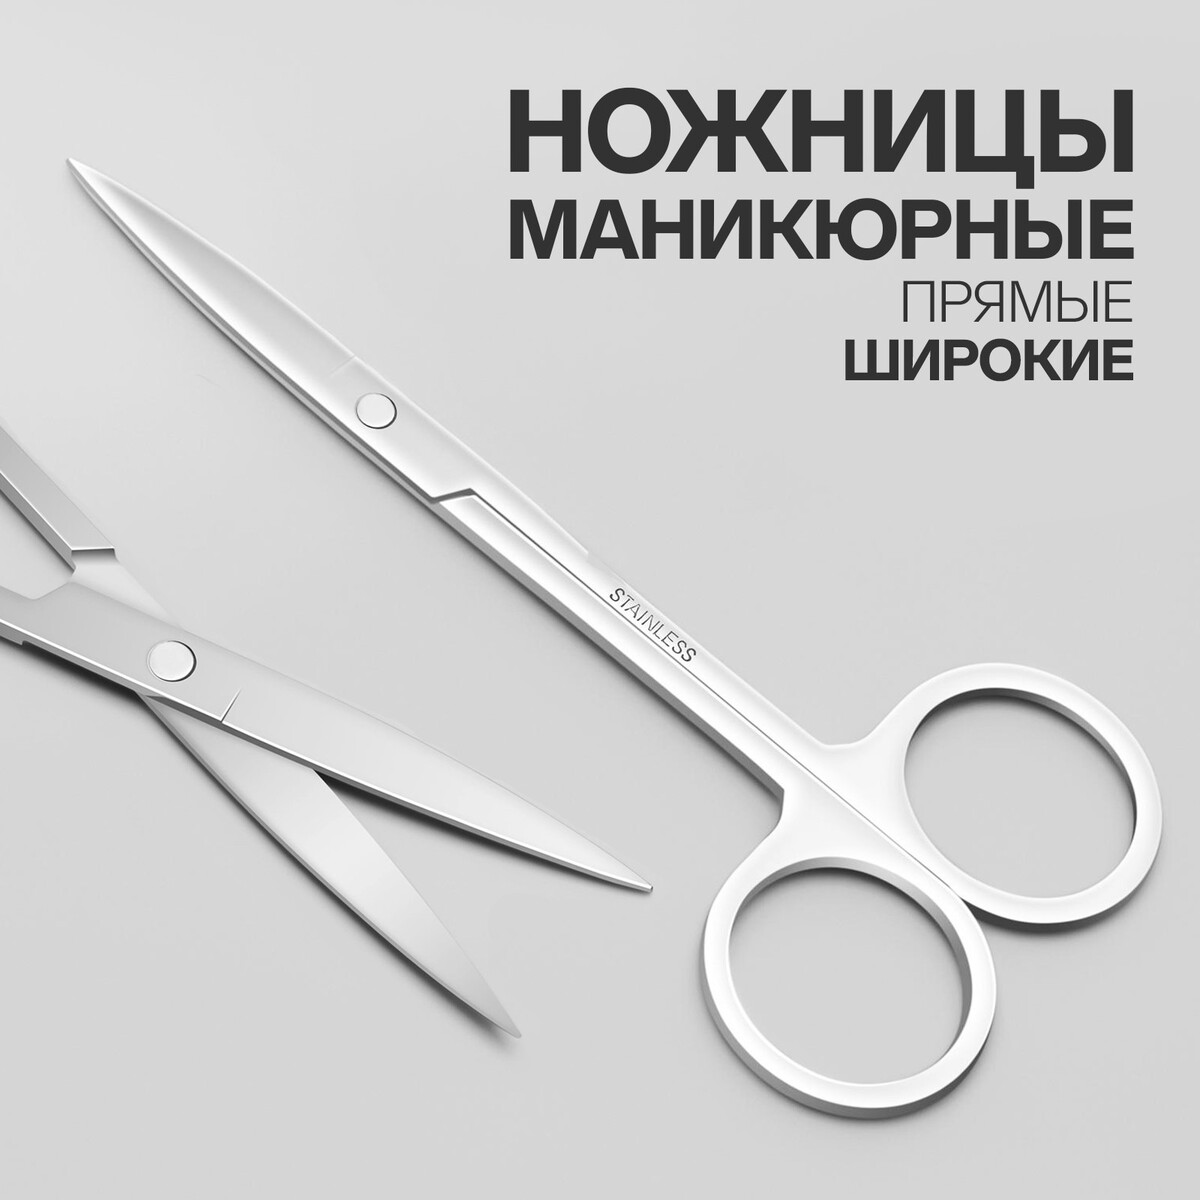 Ножницы маникюрные, прямые, широкие, 12 см, цвет серебристый ножницы маникюрные загнутые широкие 8 8 см хамелеон